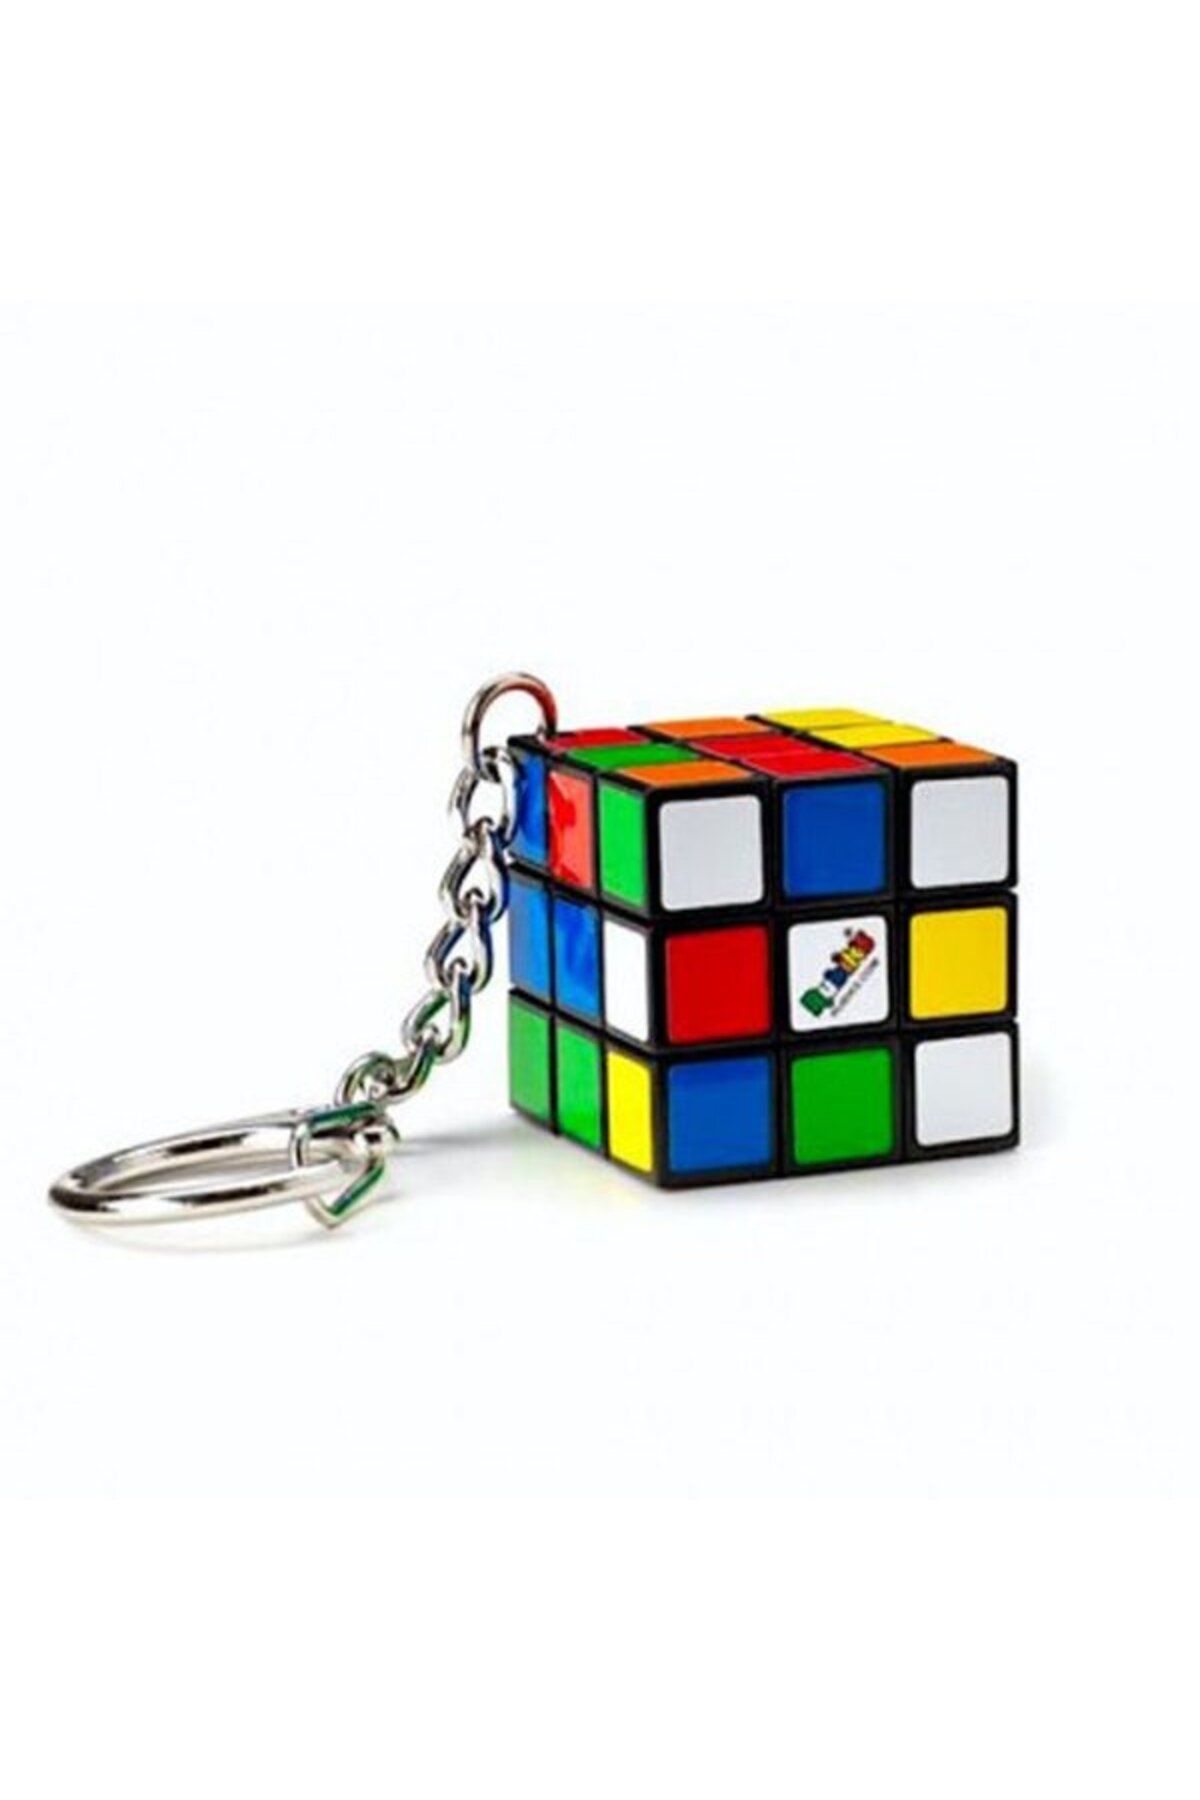 Rubiks -3X3 Cube Anahtarlık 6064001